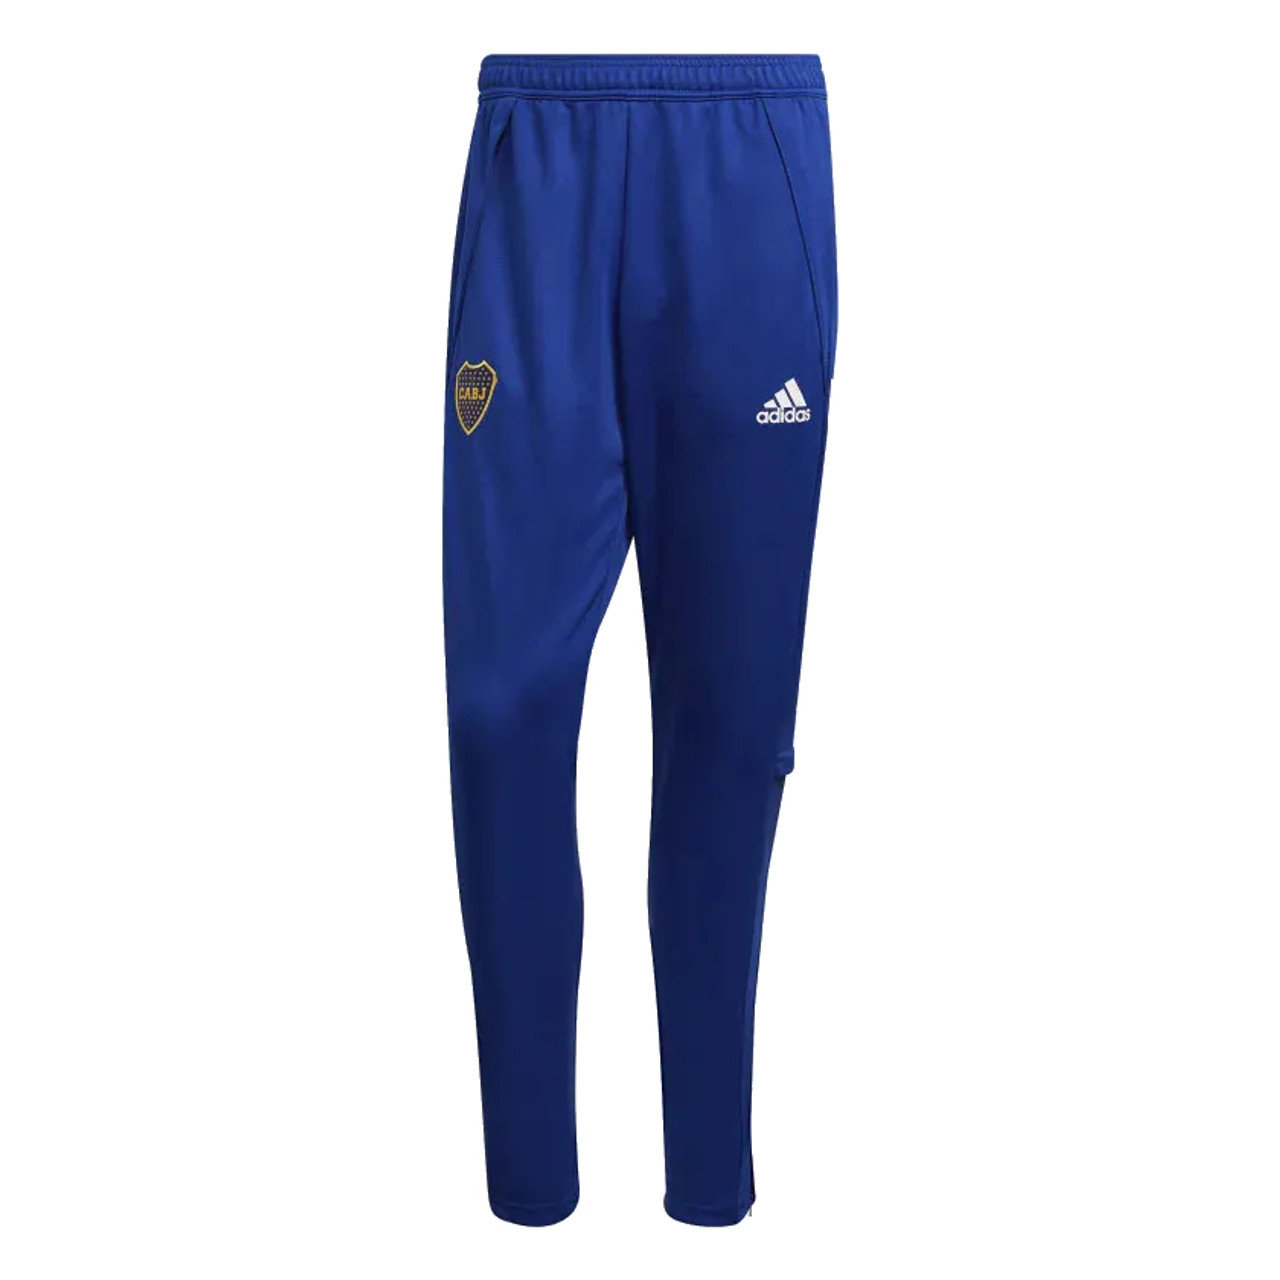 Adidas Boca Juniors Training Pants 20-21- Adidas Official (various ...